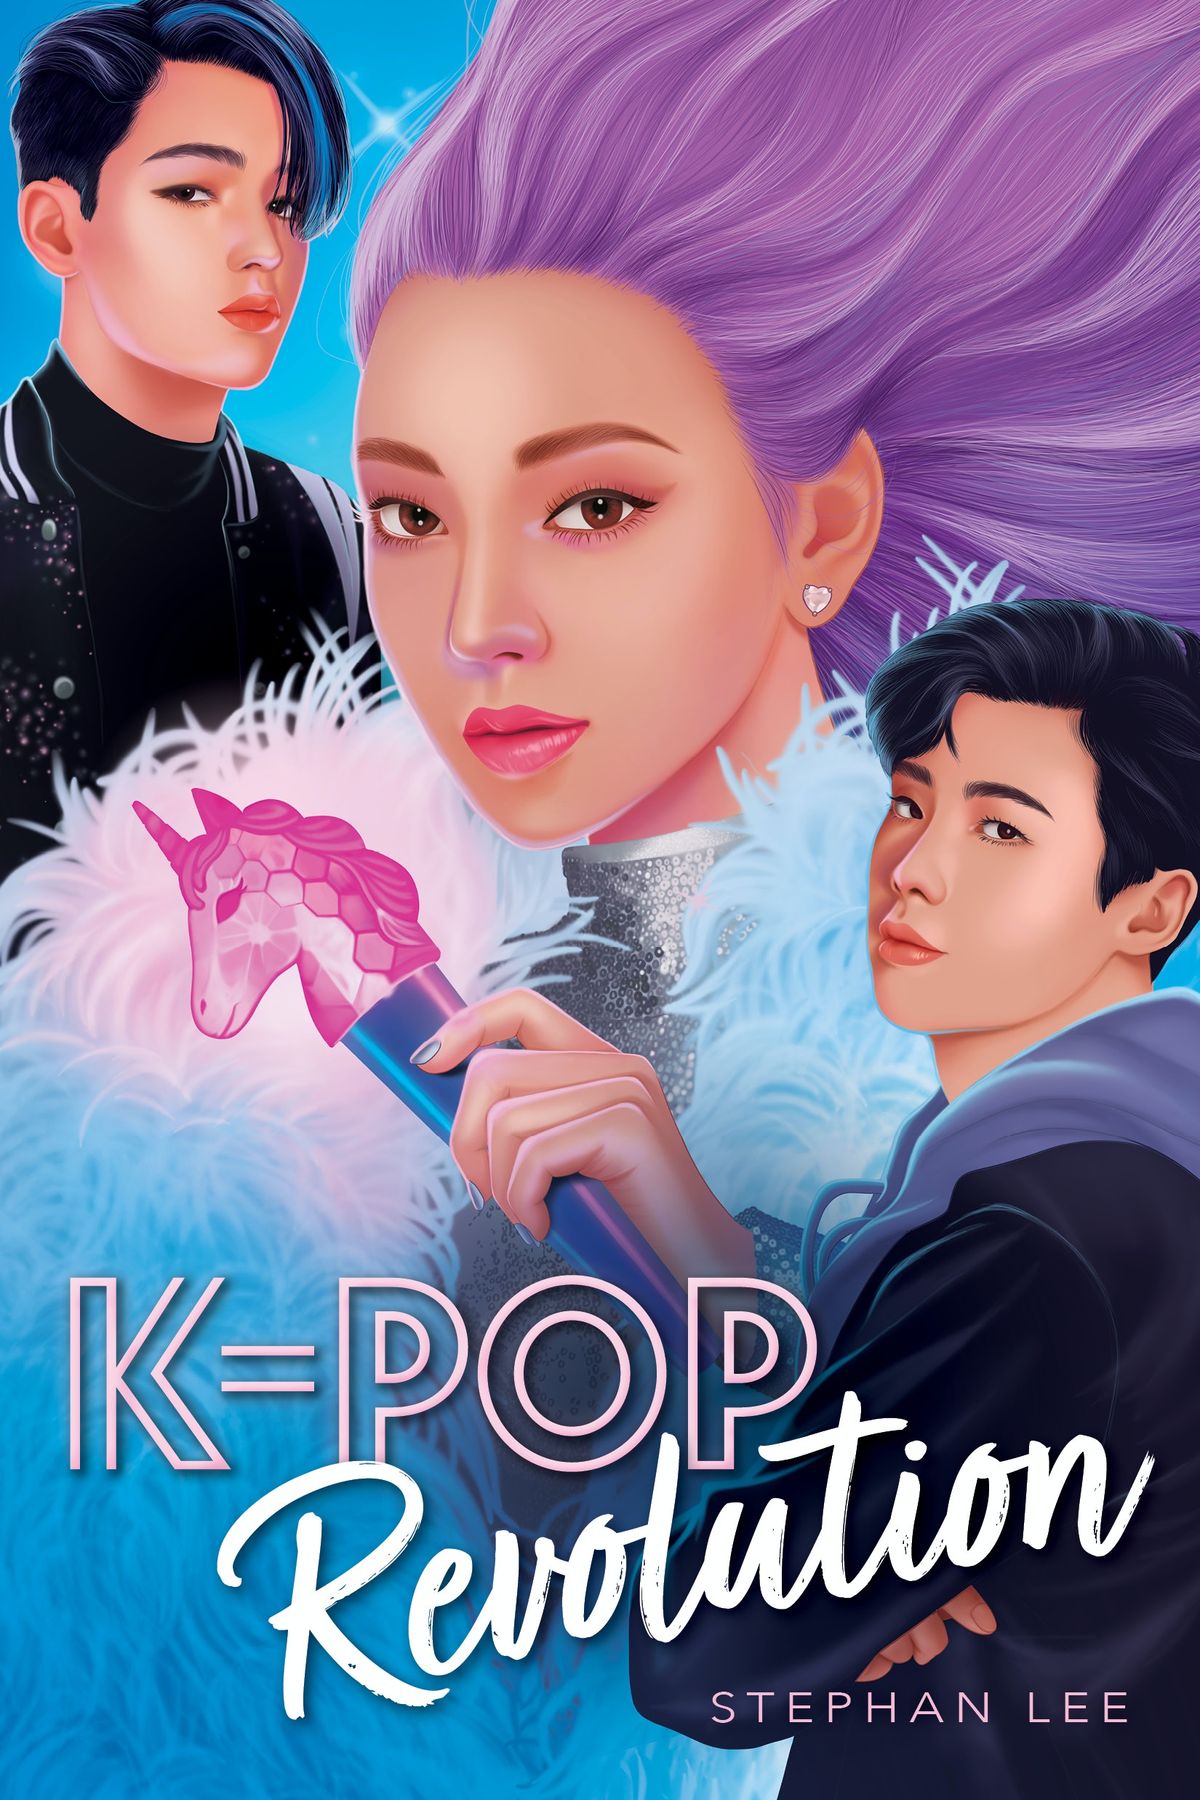 Získajte prvý pohľad na dôverné pokračovanie K-Popu Stephana Leeho, K-Pop Revolution